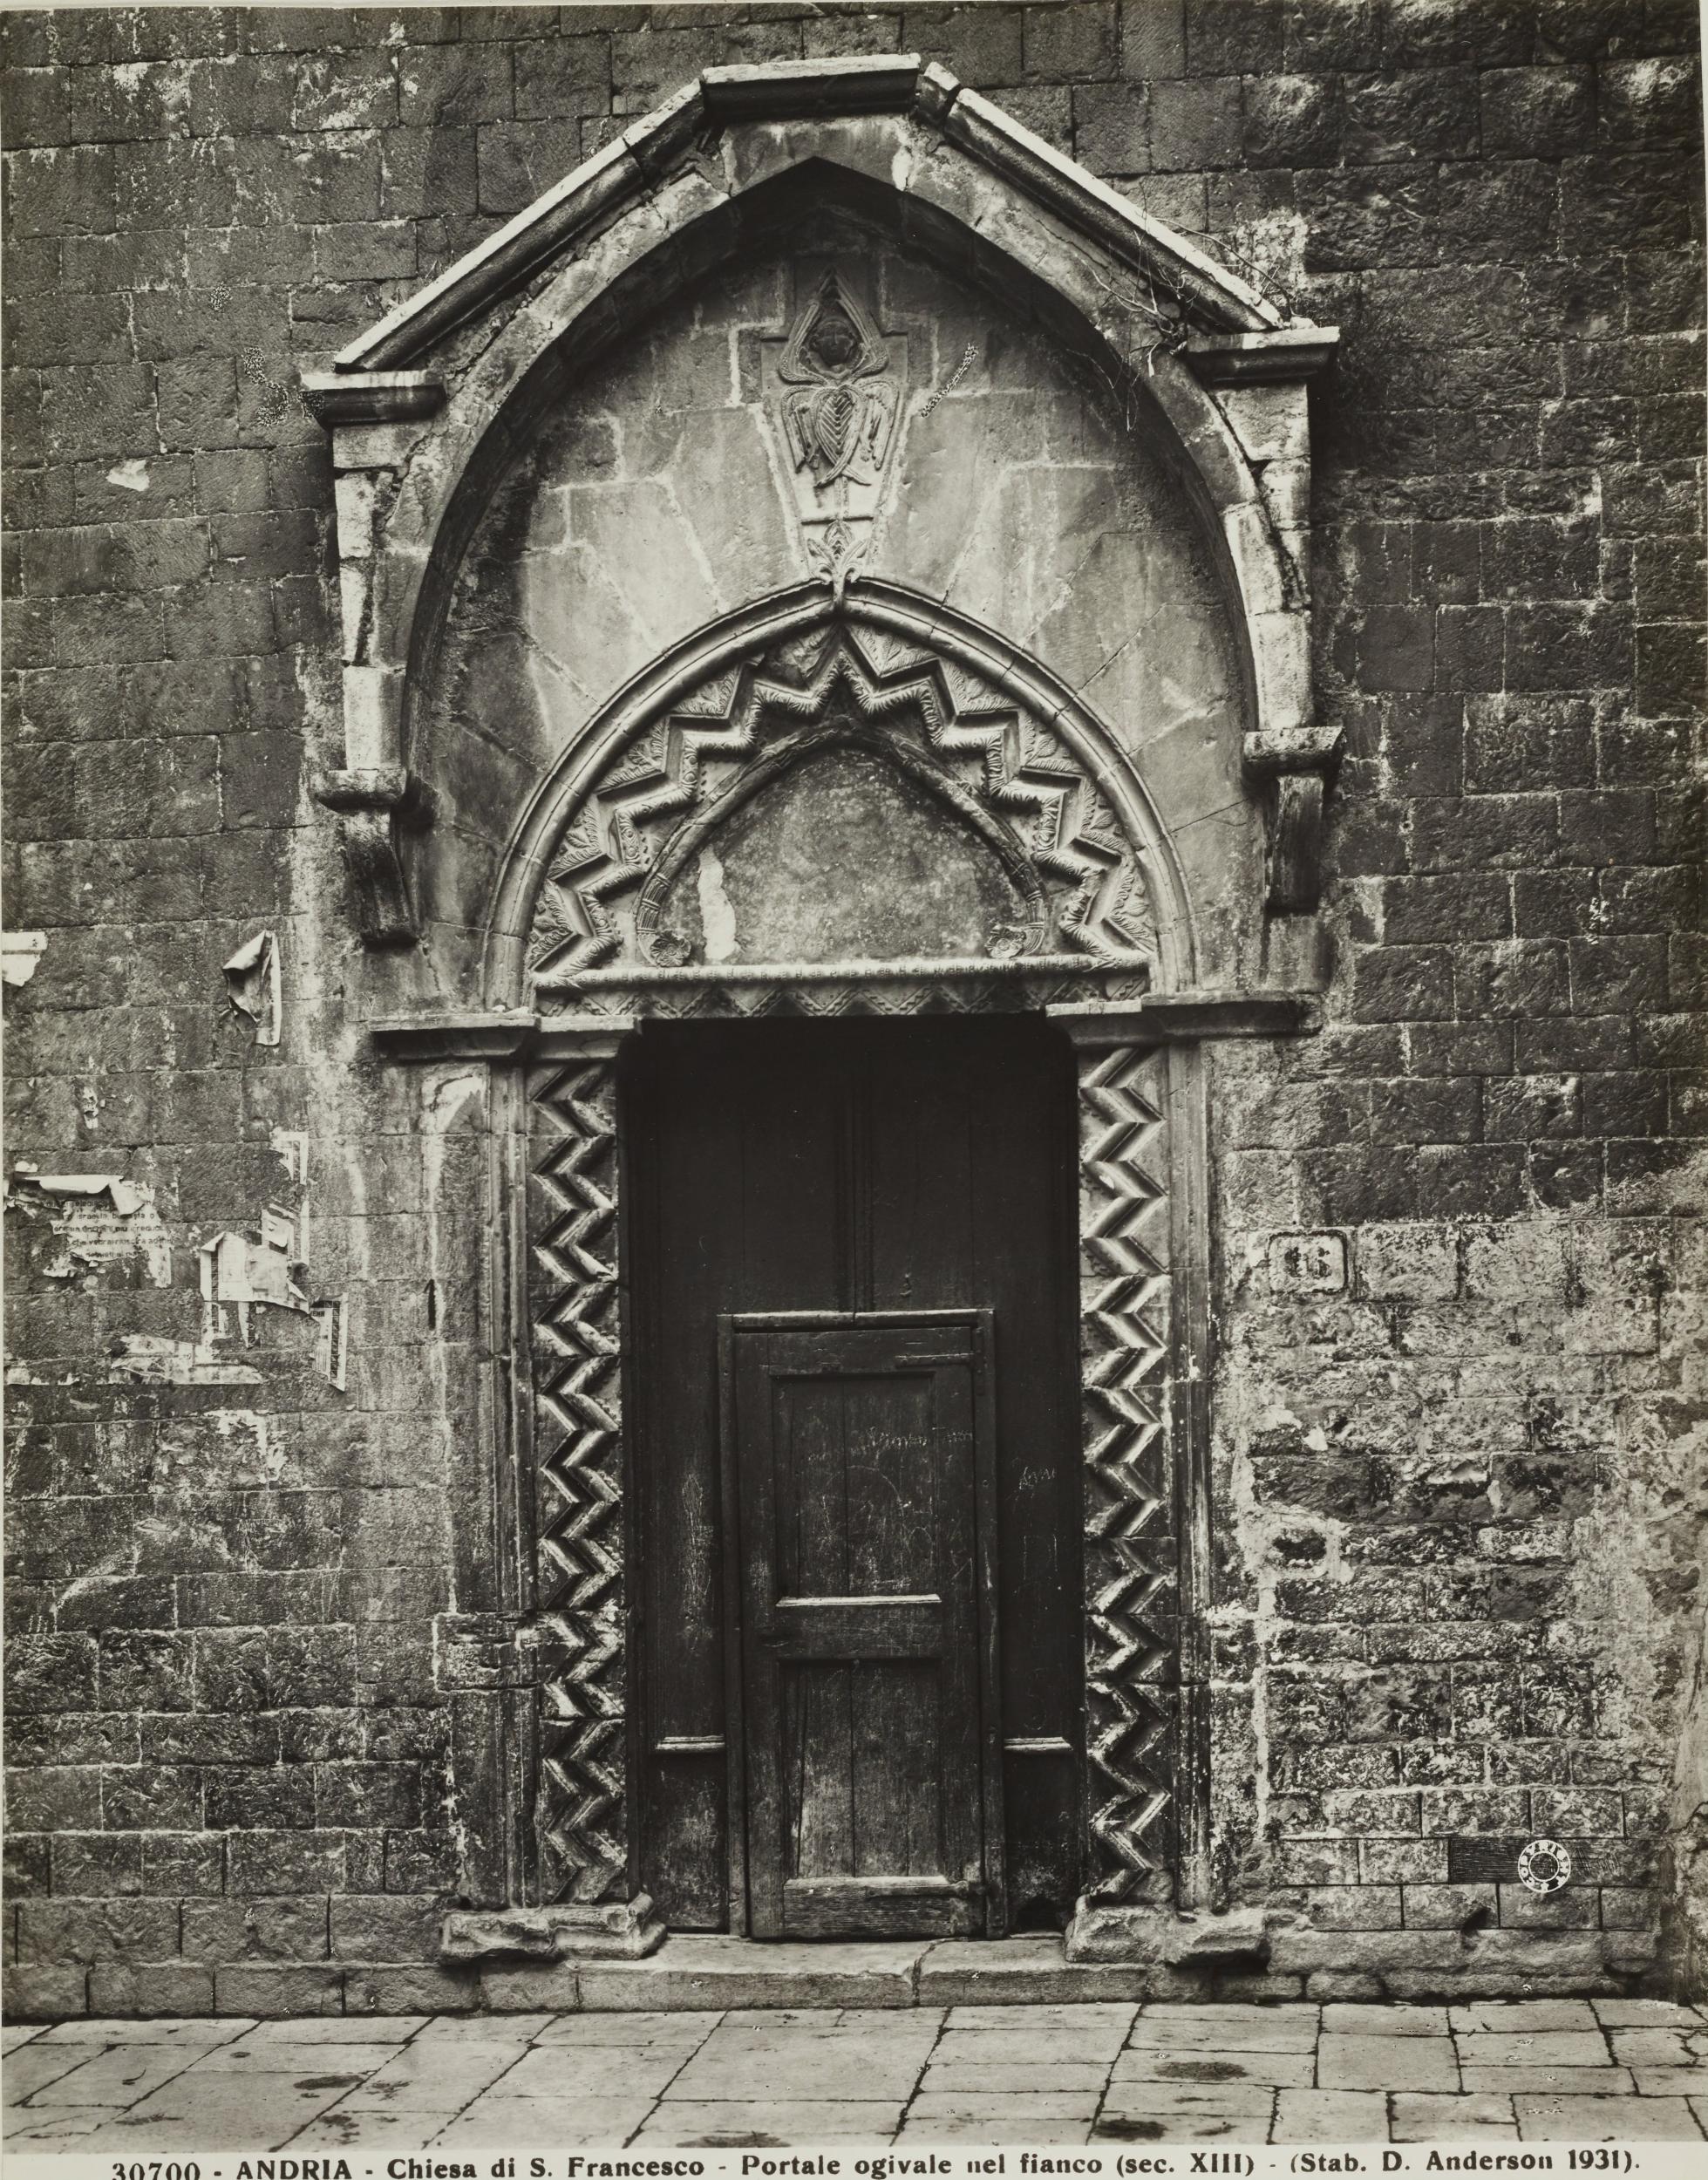 Fotografo non identificato, Andria - Basilica di S. Francesco, portale laterale, 1931, gelatina ai sali d'argento/carta, MPI131874